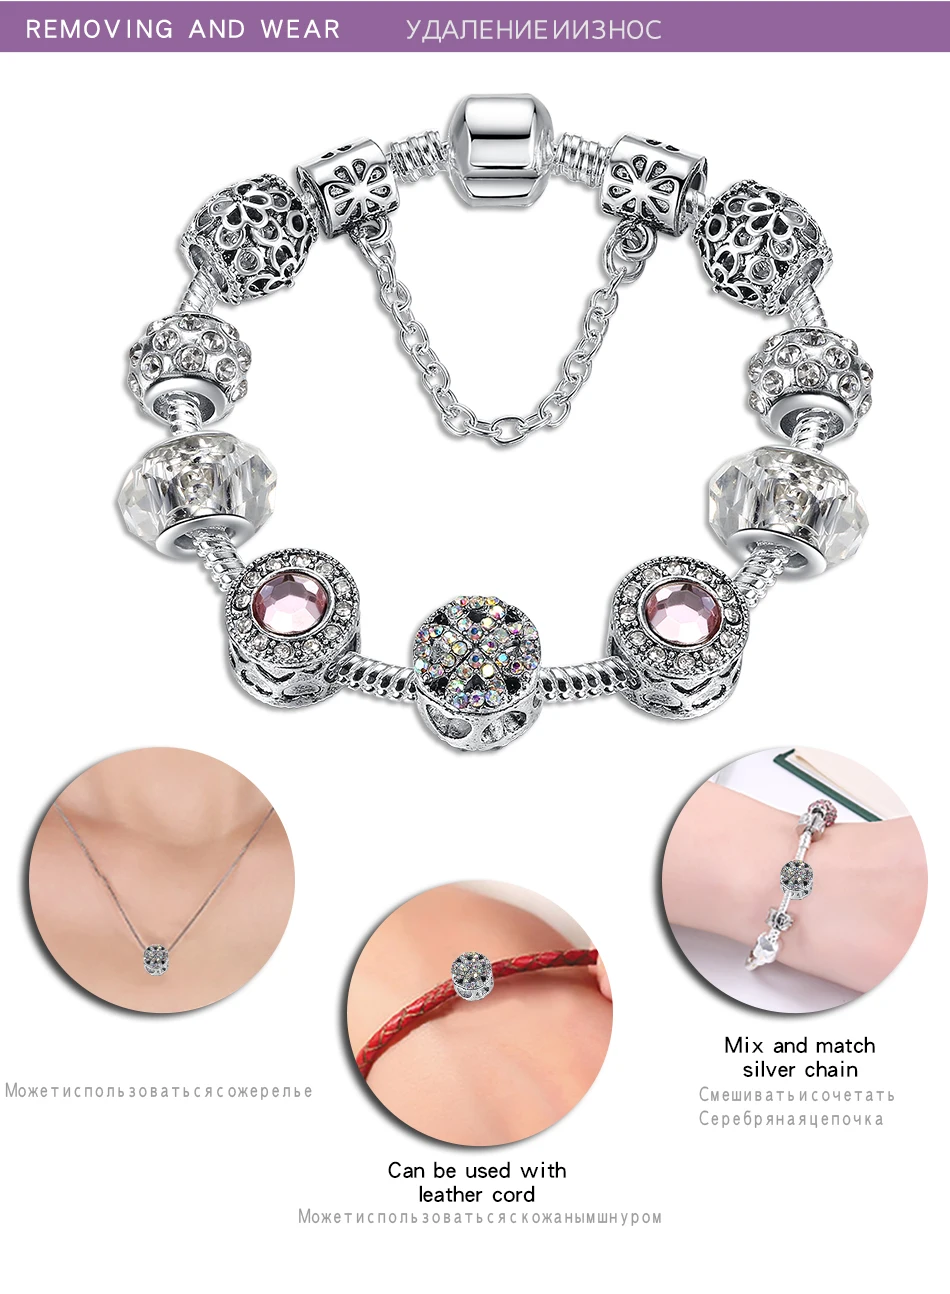 FOREWE счастливый клевер сердце женский браслет с муранским стеклом Кристалл 925 серебряный бисер очарование браслет для женщин DIY ювелирные изделия подарок